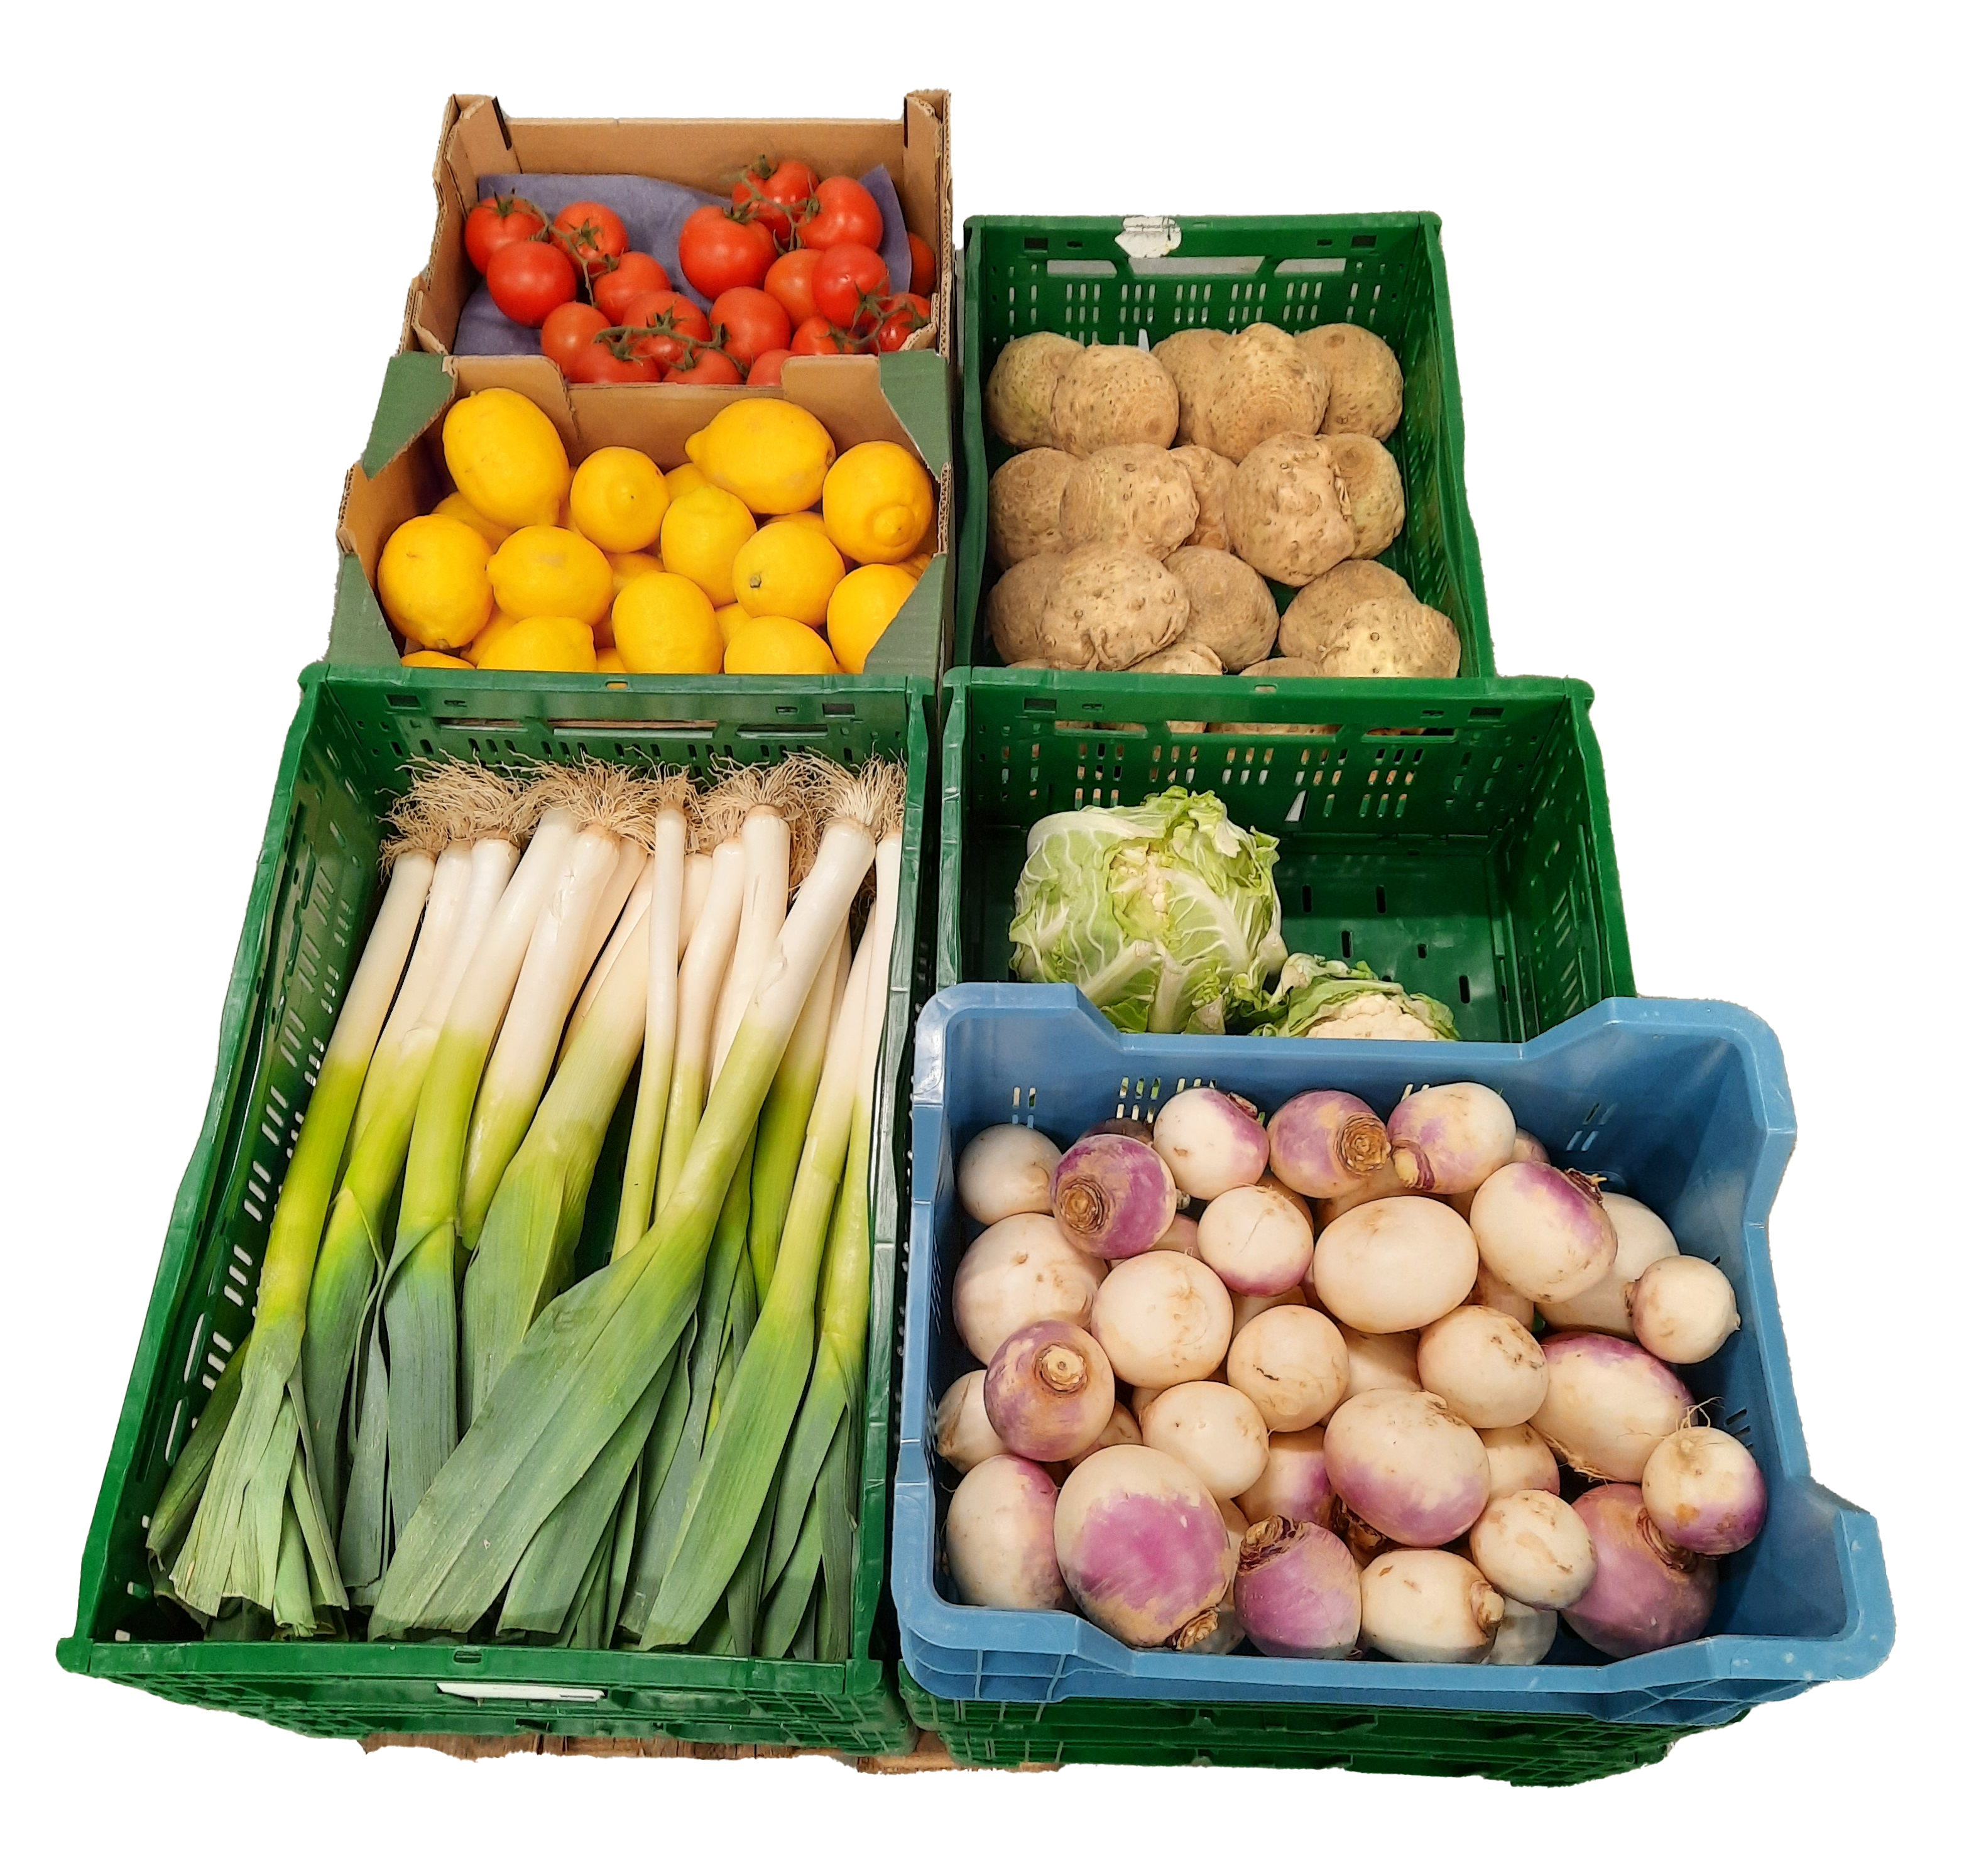 Assortiment groenten en fruit wordt uitgebreid aan scherpe prijzen!